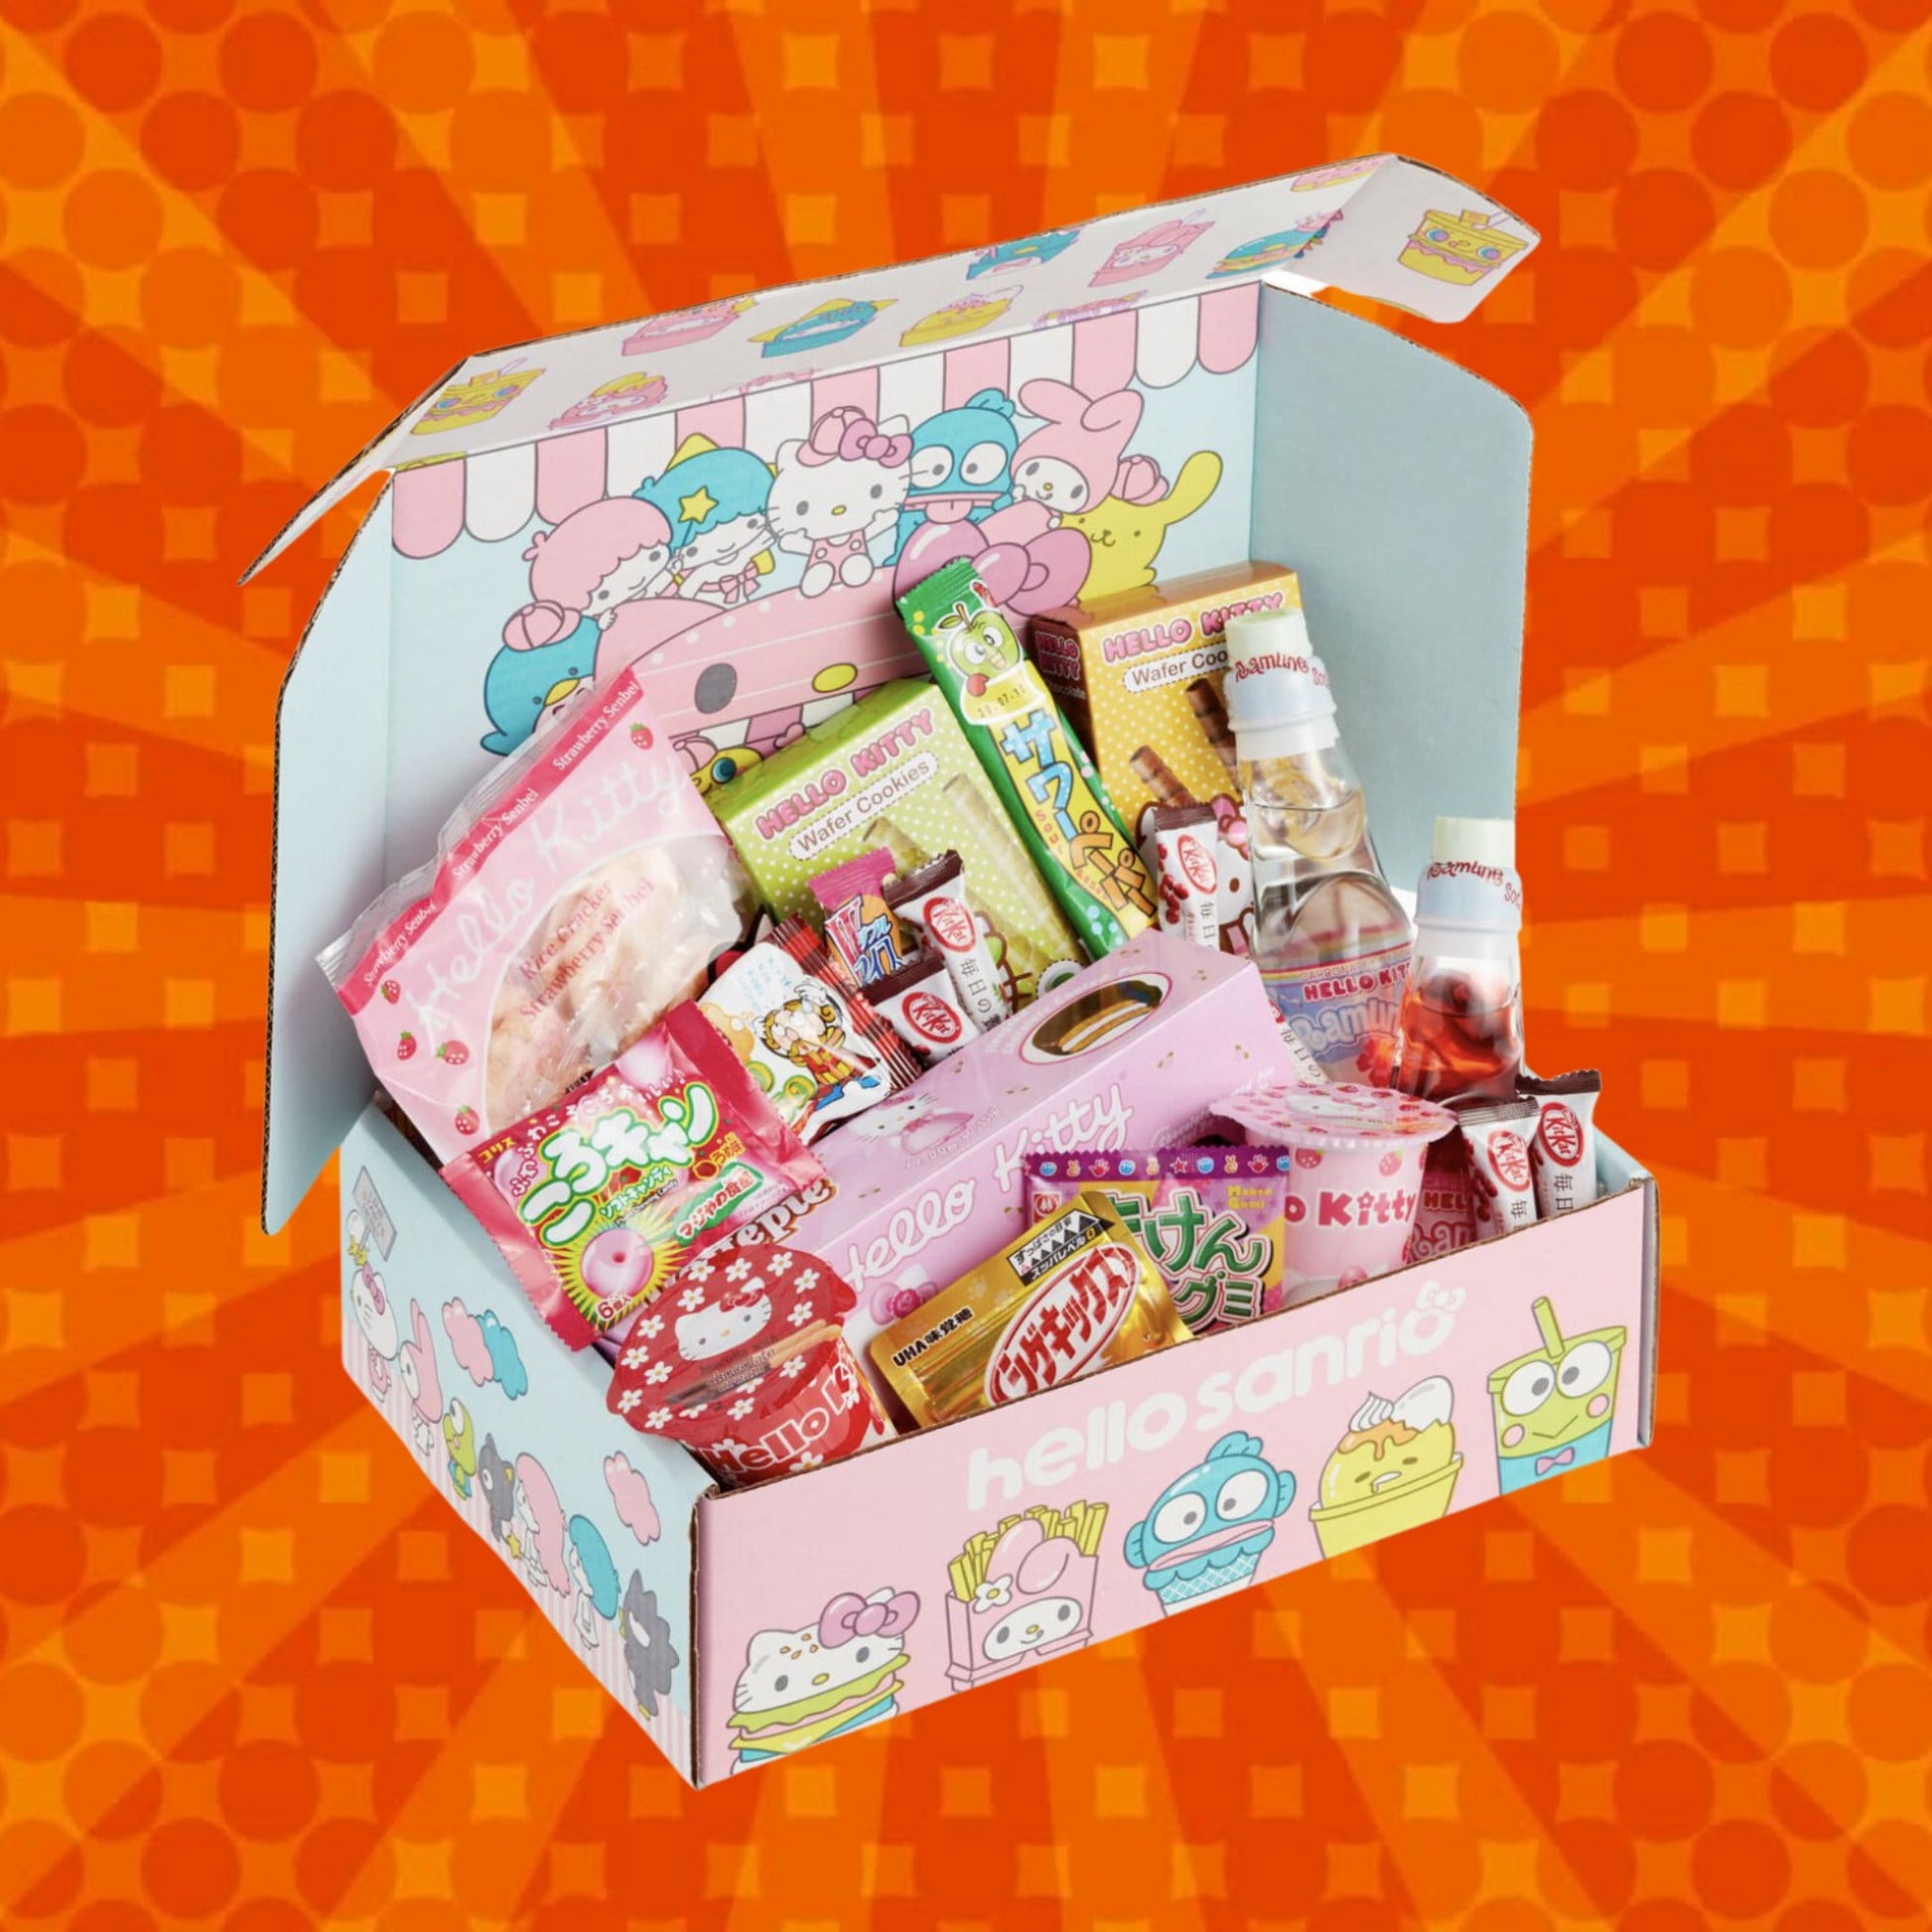 Hello Sanrio Mystery Snack Box 